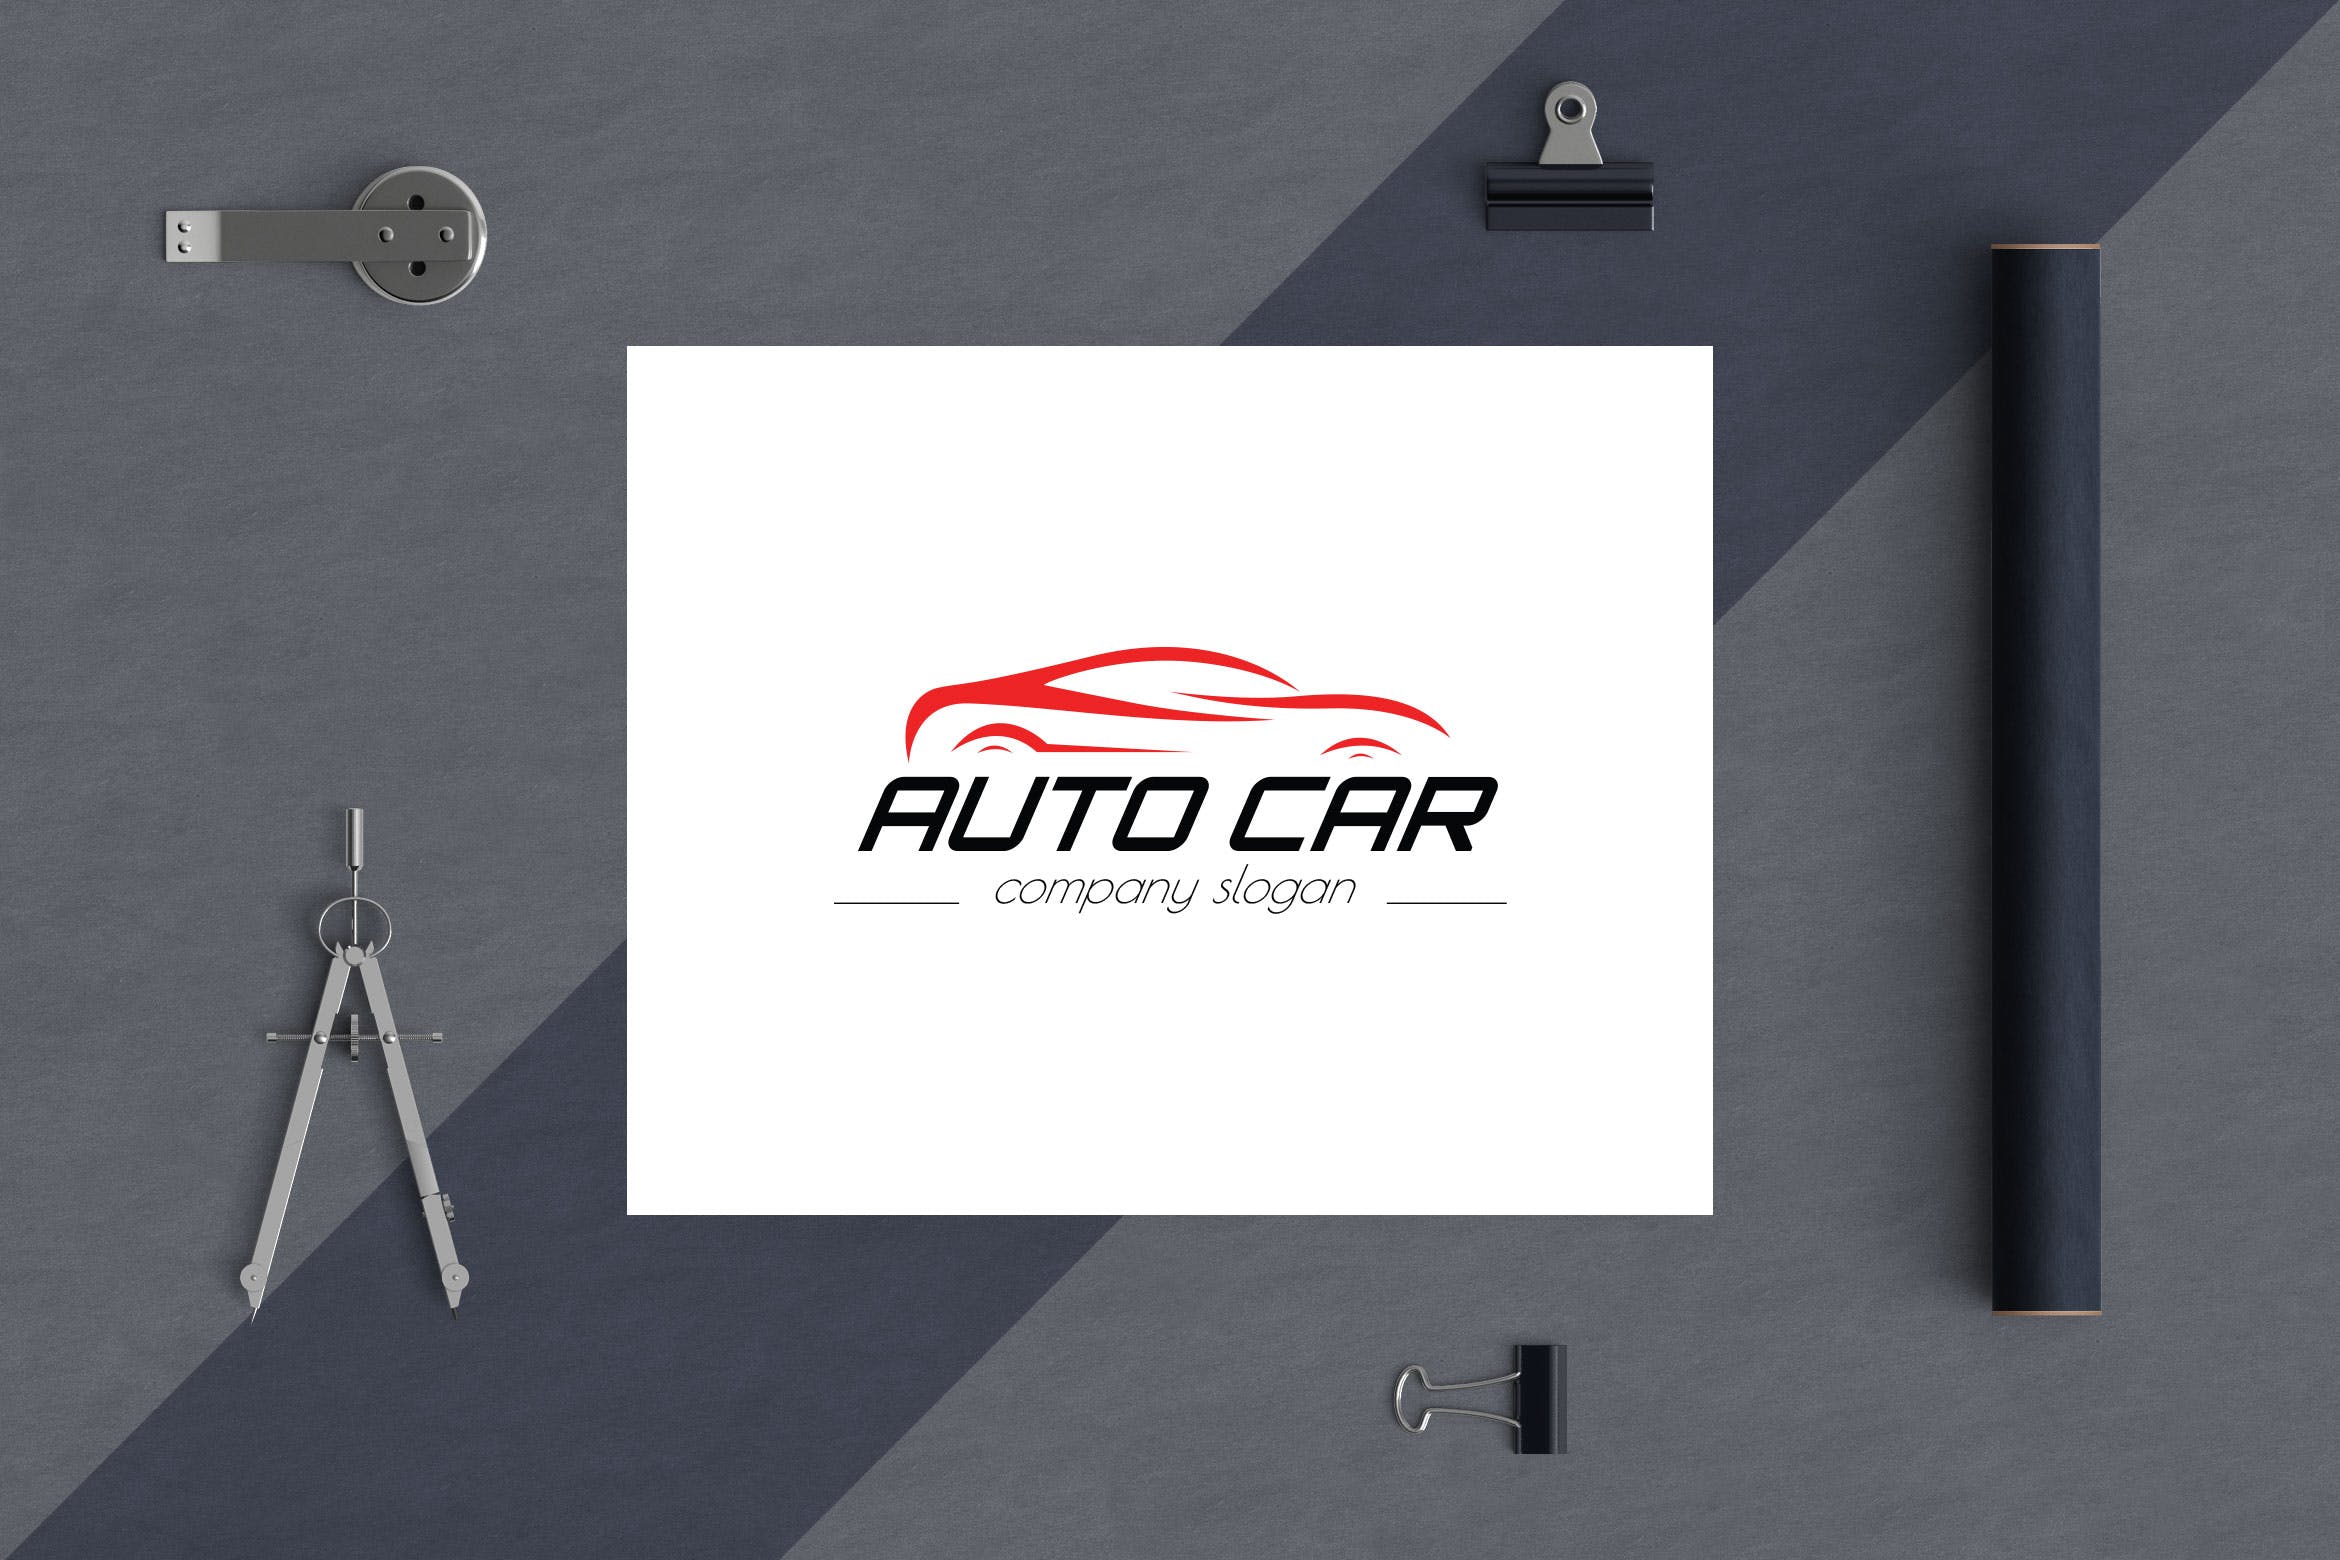 汽车相关企业品牌Logo设计第一素材精选模板 Auto Car Business Logo Template插图